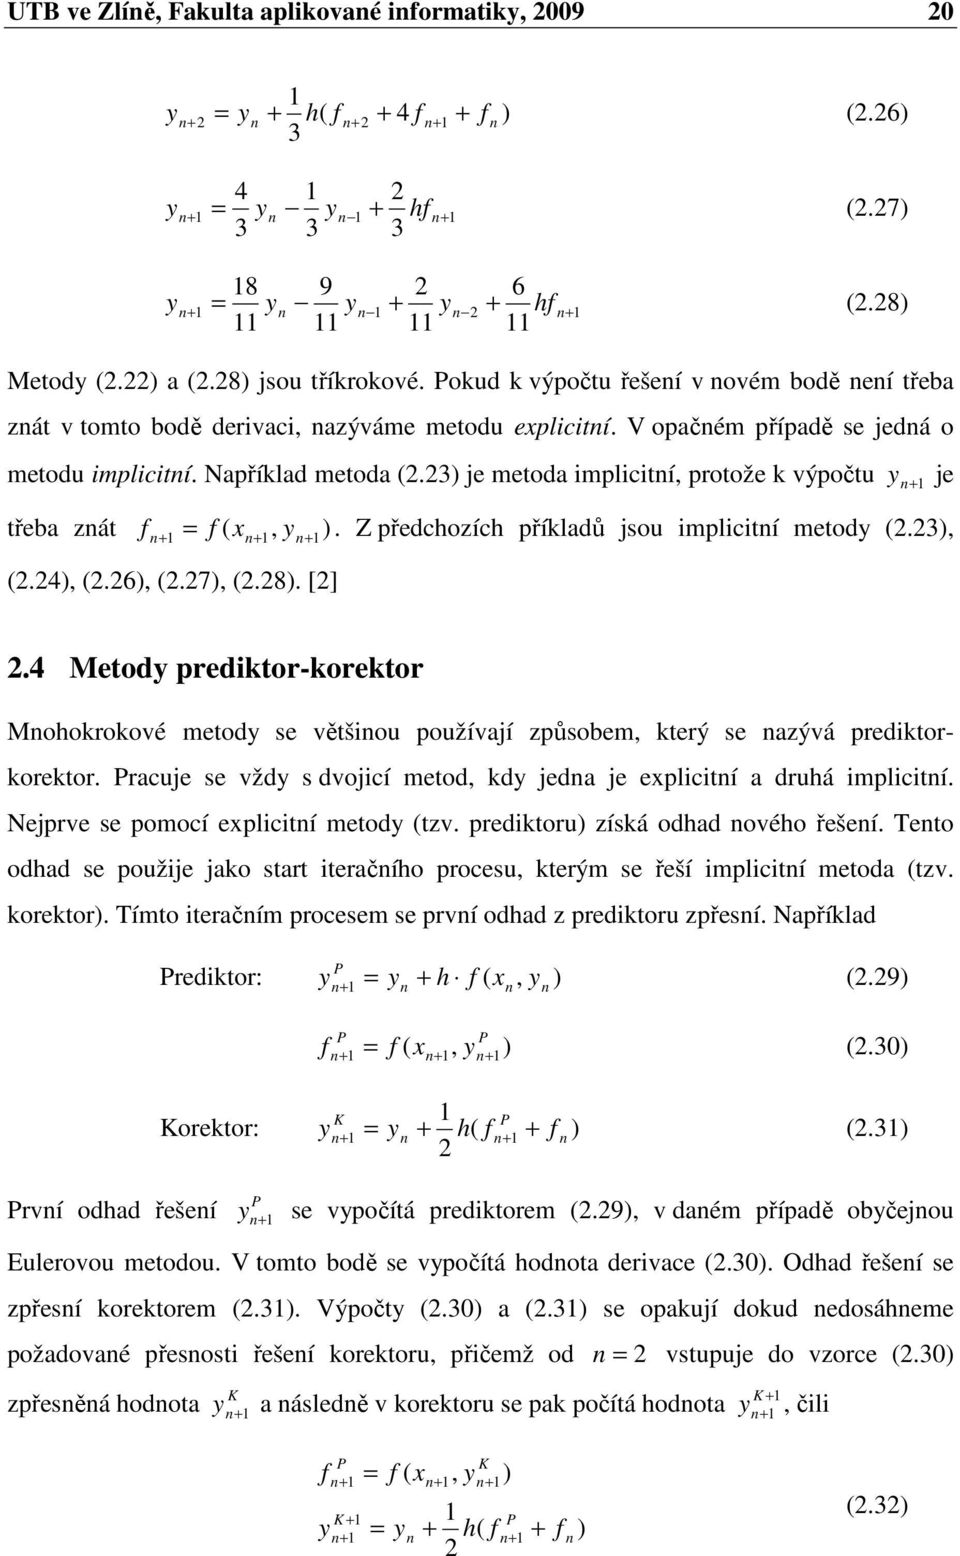 4 Metod prediktor-korektor Mookrokové metod se většiou používají způsobem, který se azývá prediktorkorektor. Pracuje se vžd s dvojicí metod, kd jeda je eplicití a druá implicití.